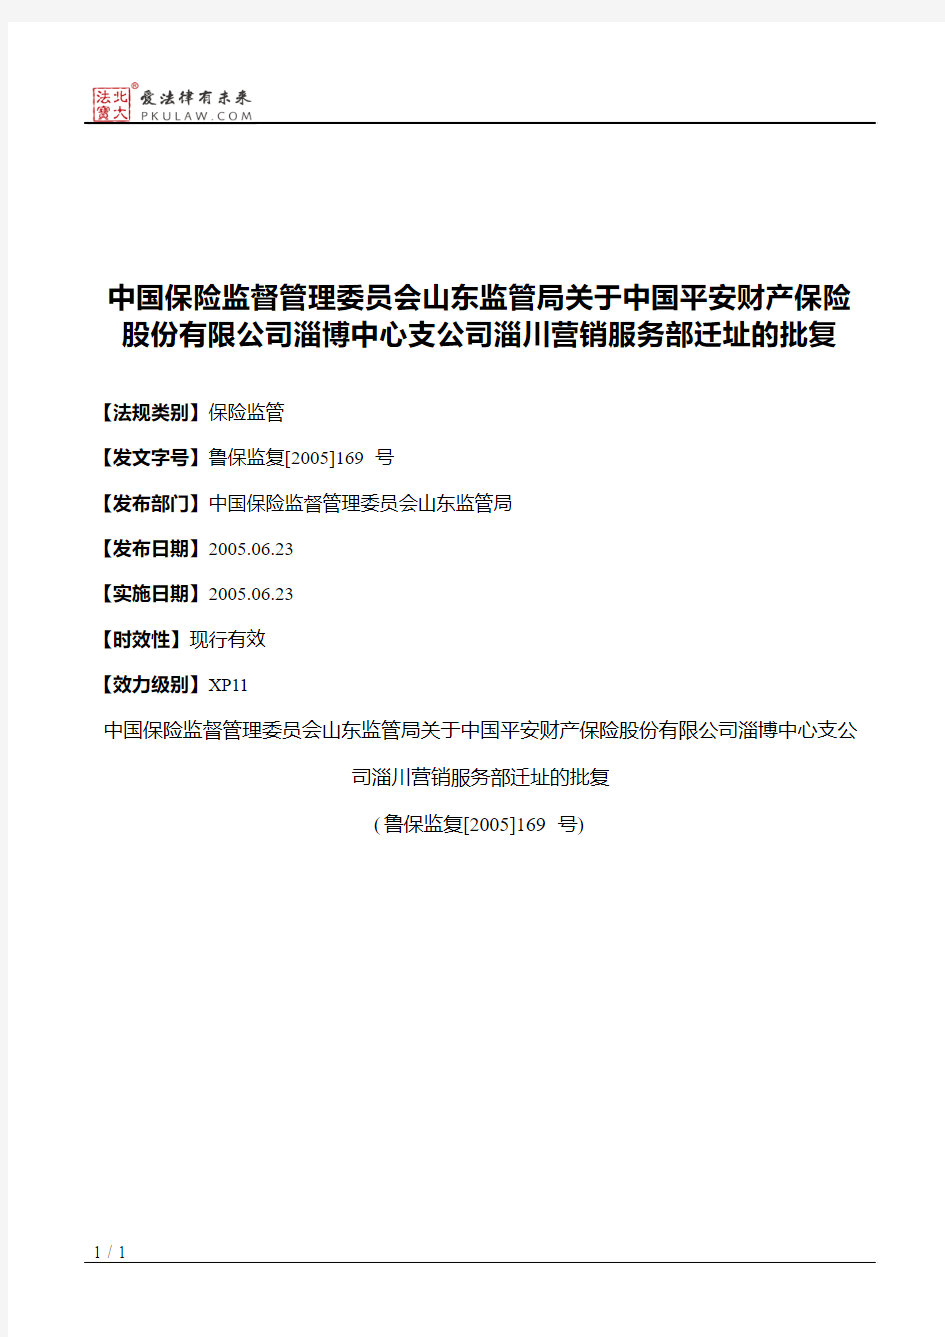 中国保险监督管理委员会山东监管局关于中国平安财产保险股份有限